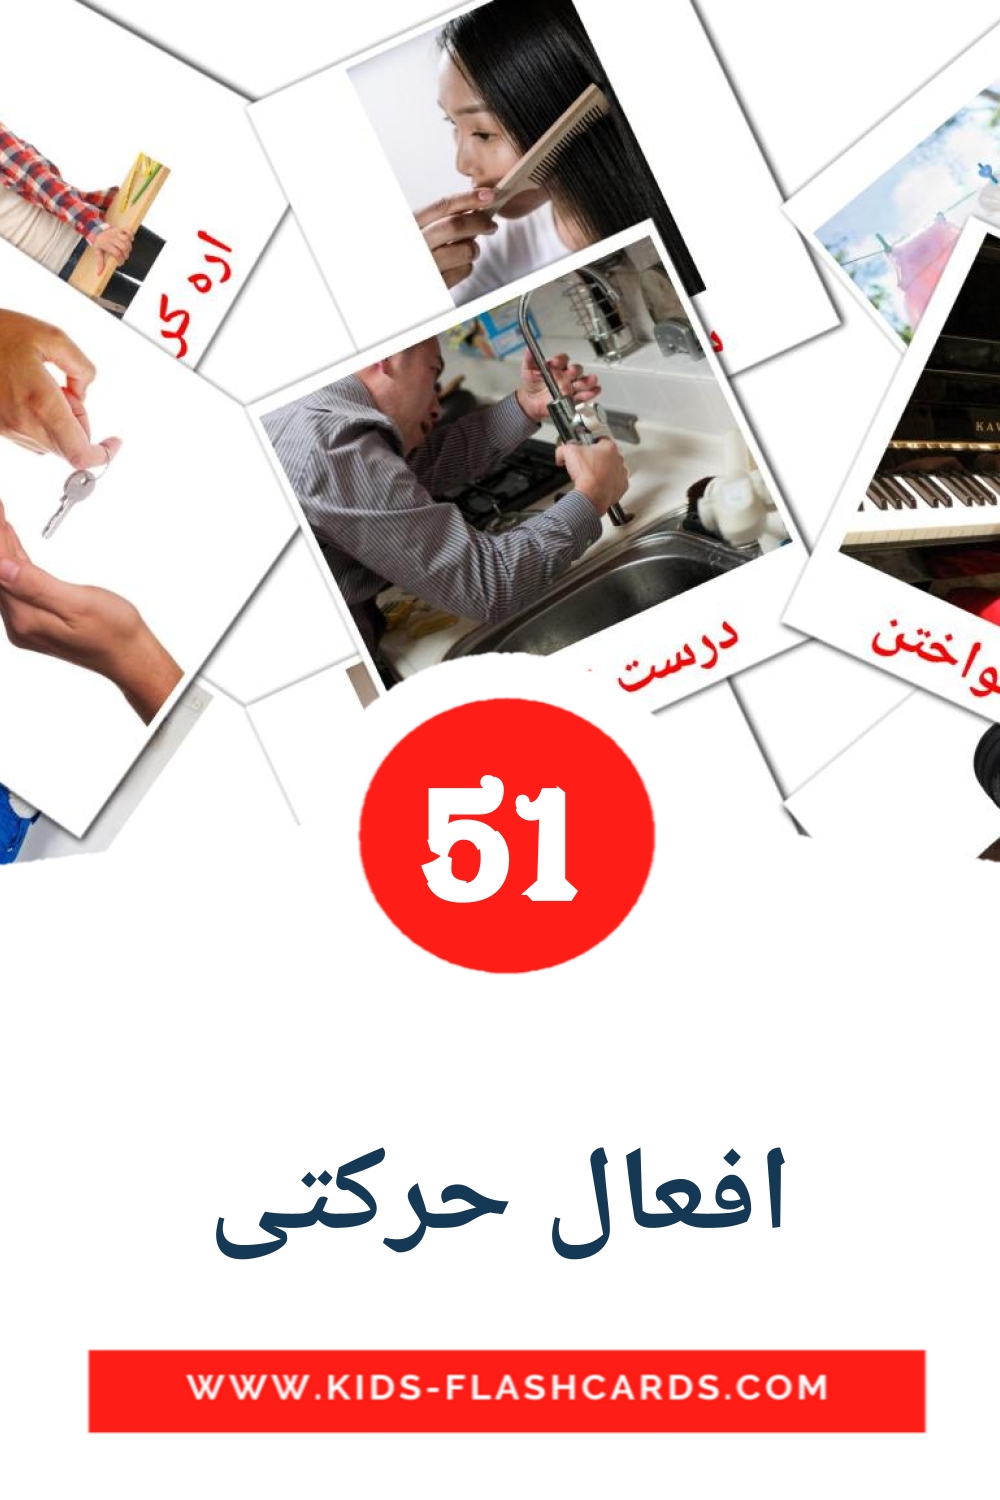 51 افعال حرکتی fotokaarten voor kleuters in het perzisch